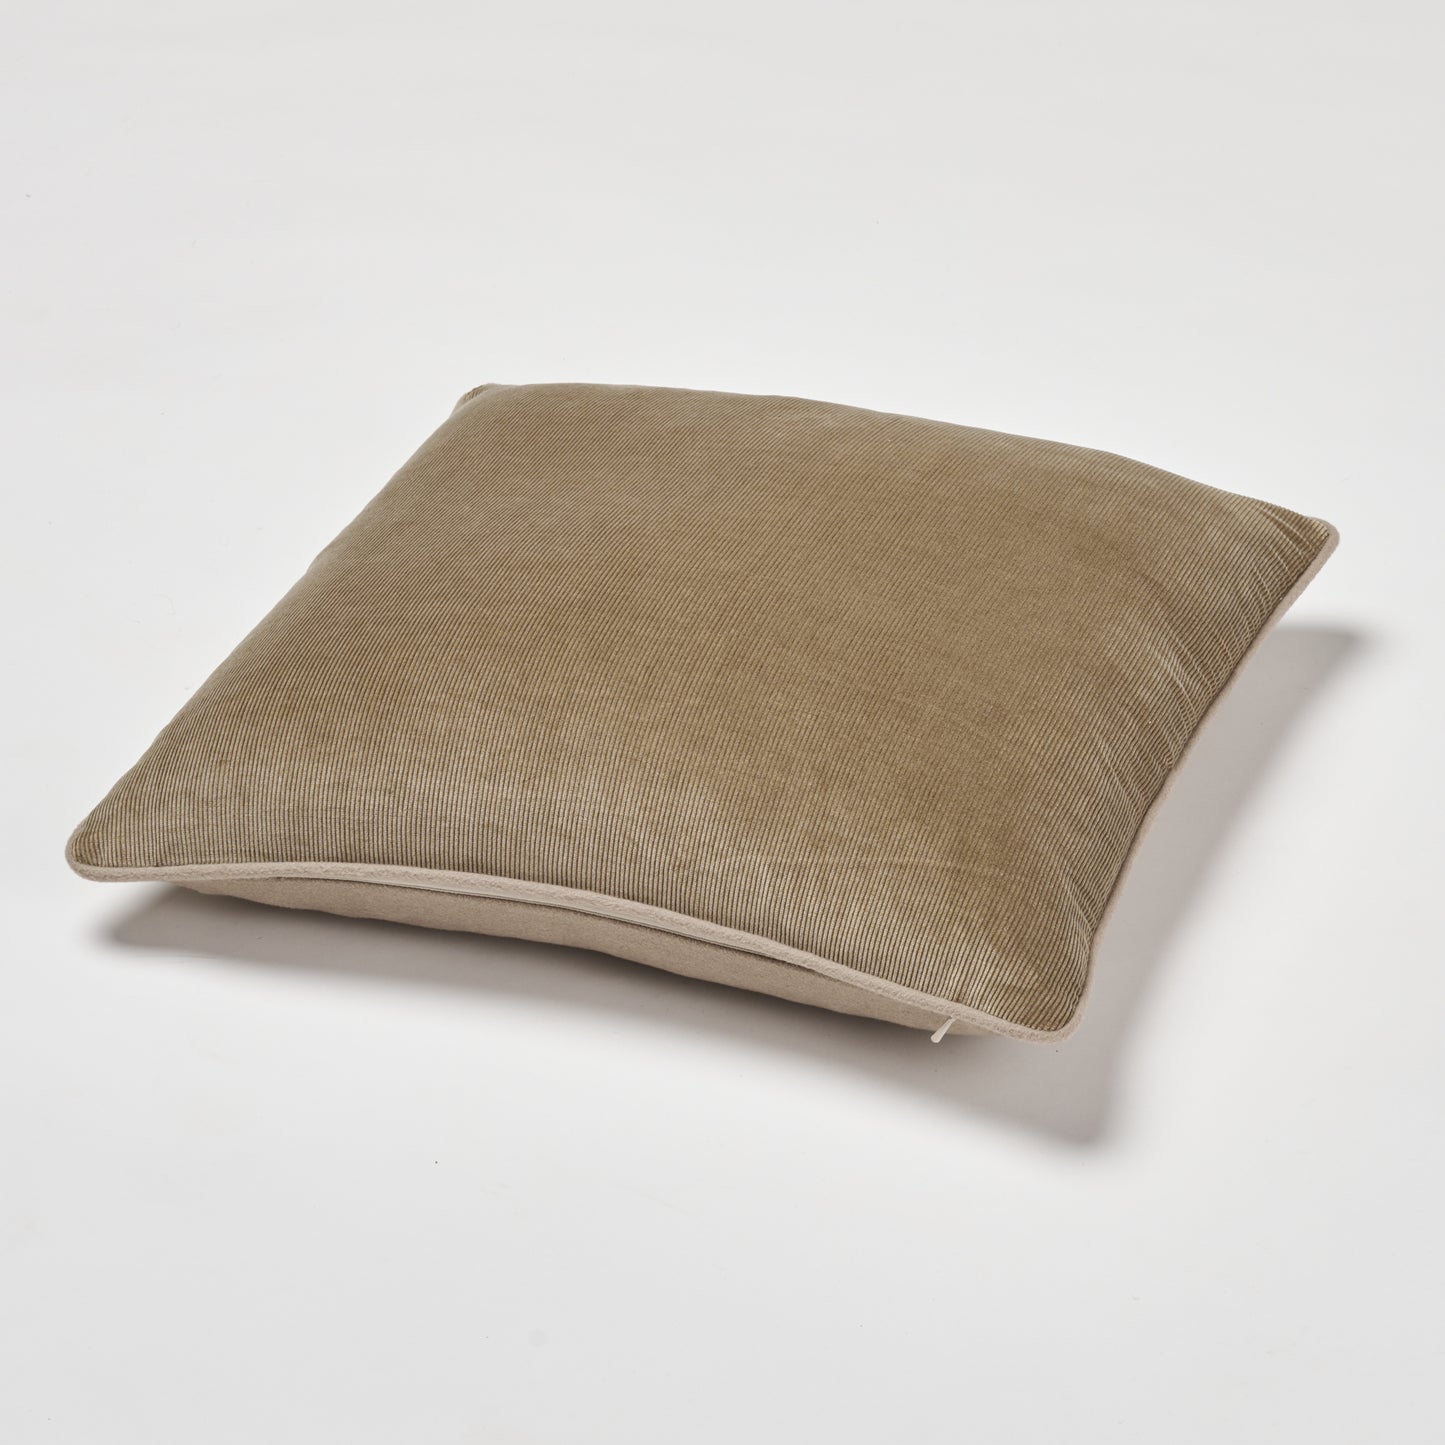 Luxe Pillow 18"x18"